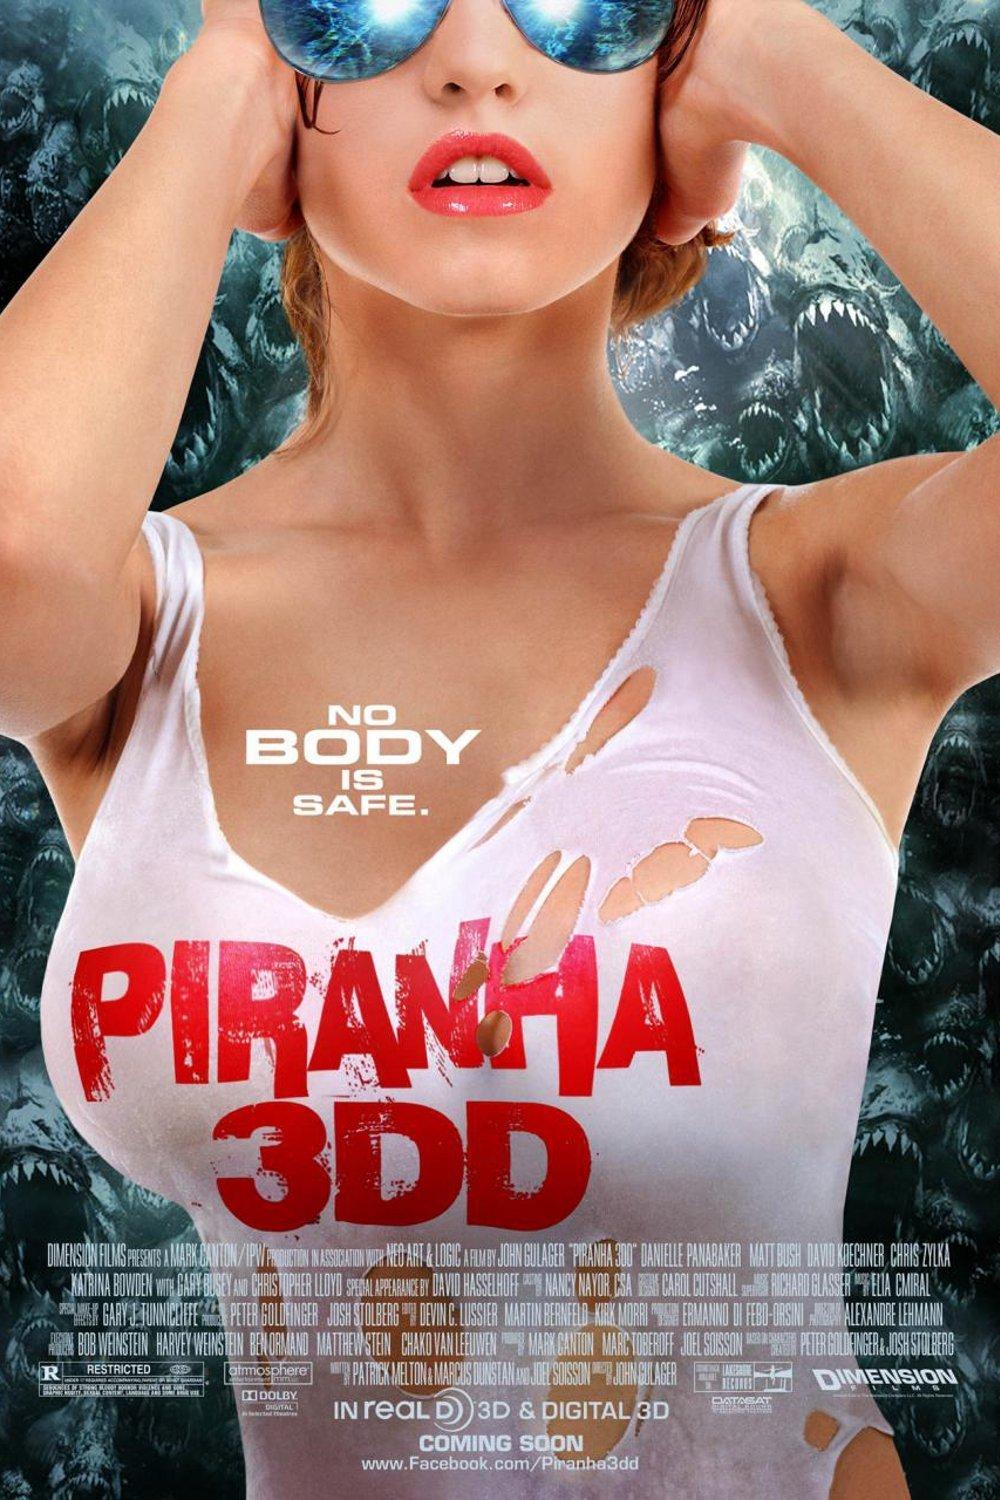  Piraña 3D 2 (Piranha 3DD)